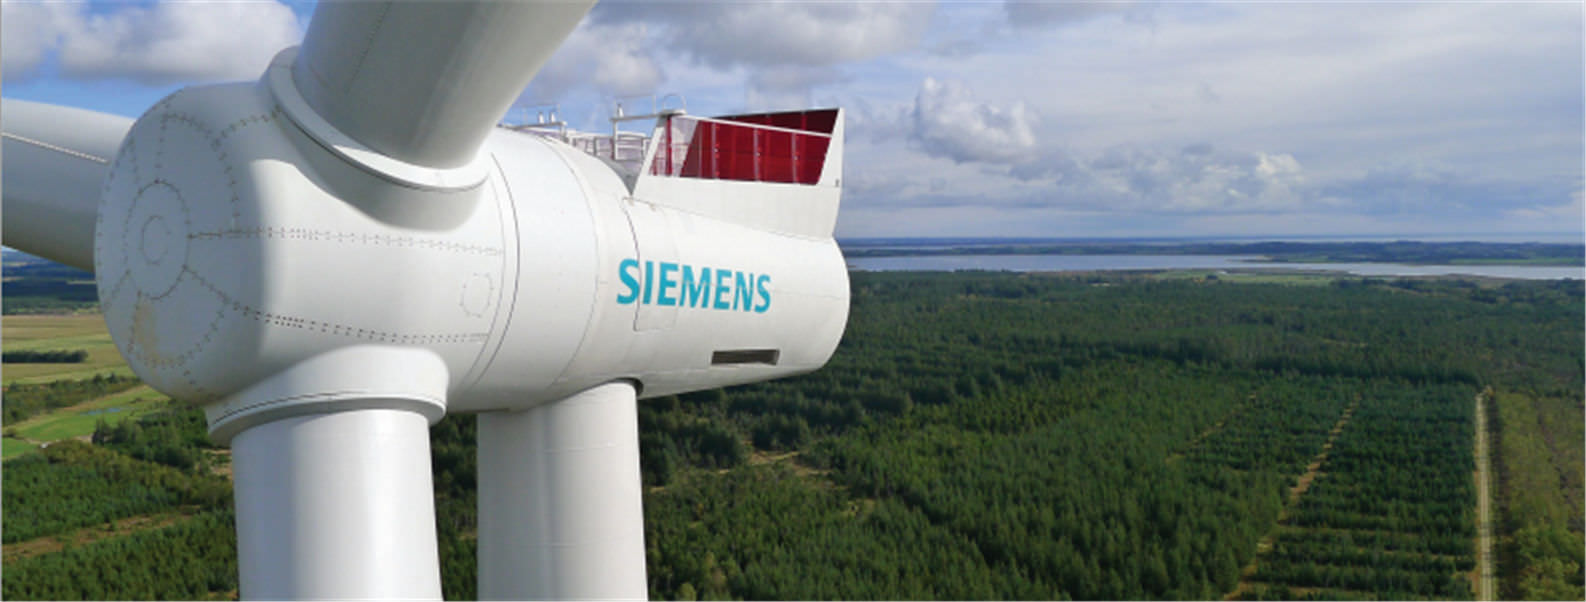 Siemens Energy introduit en Bourse va devoir convaincre